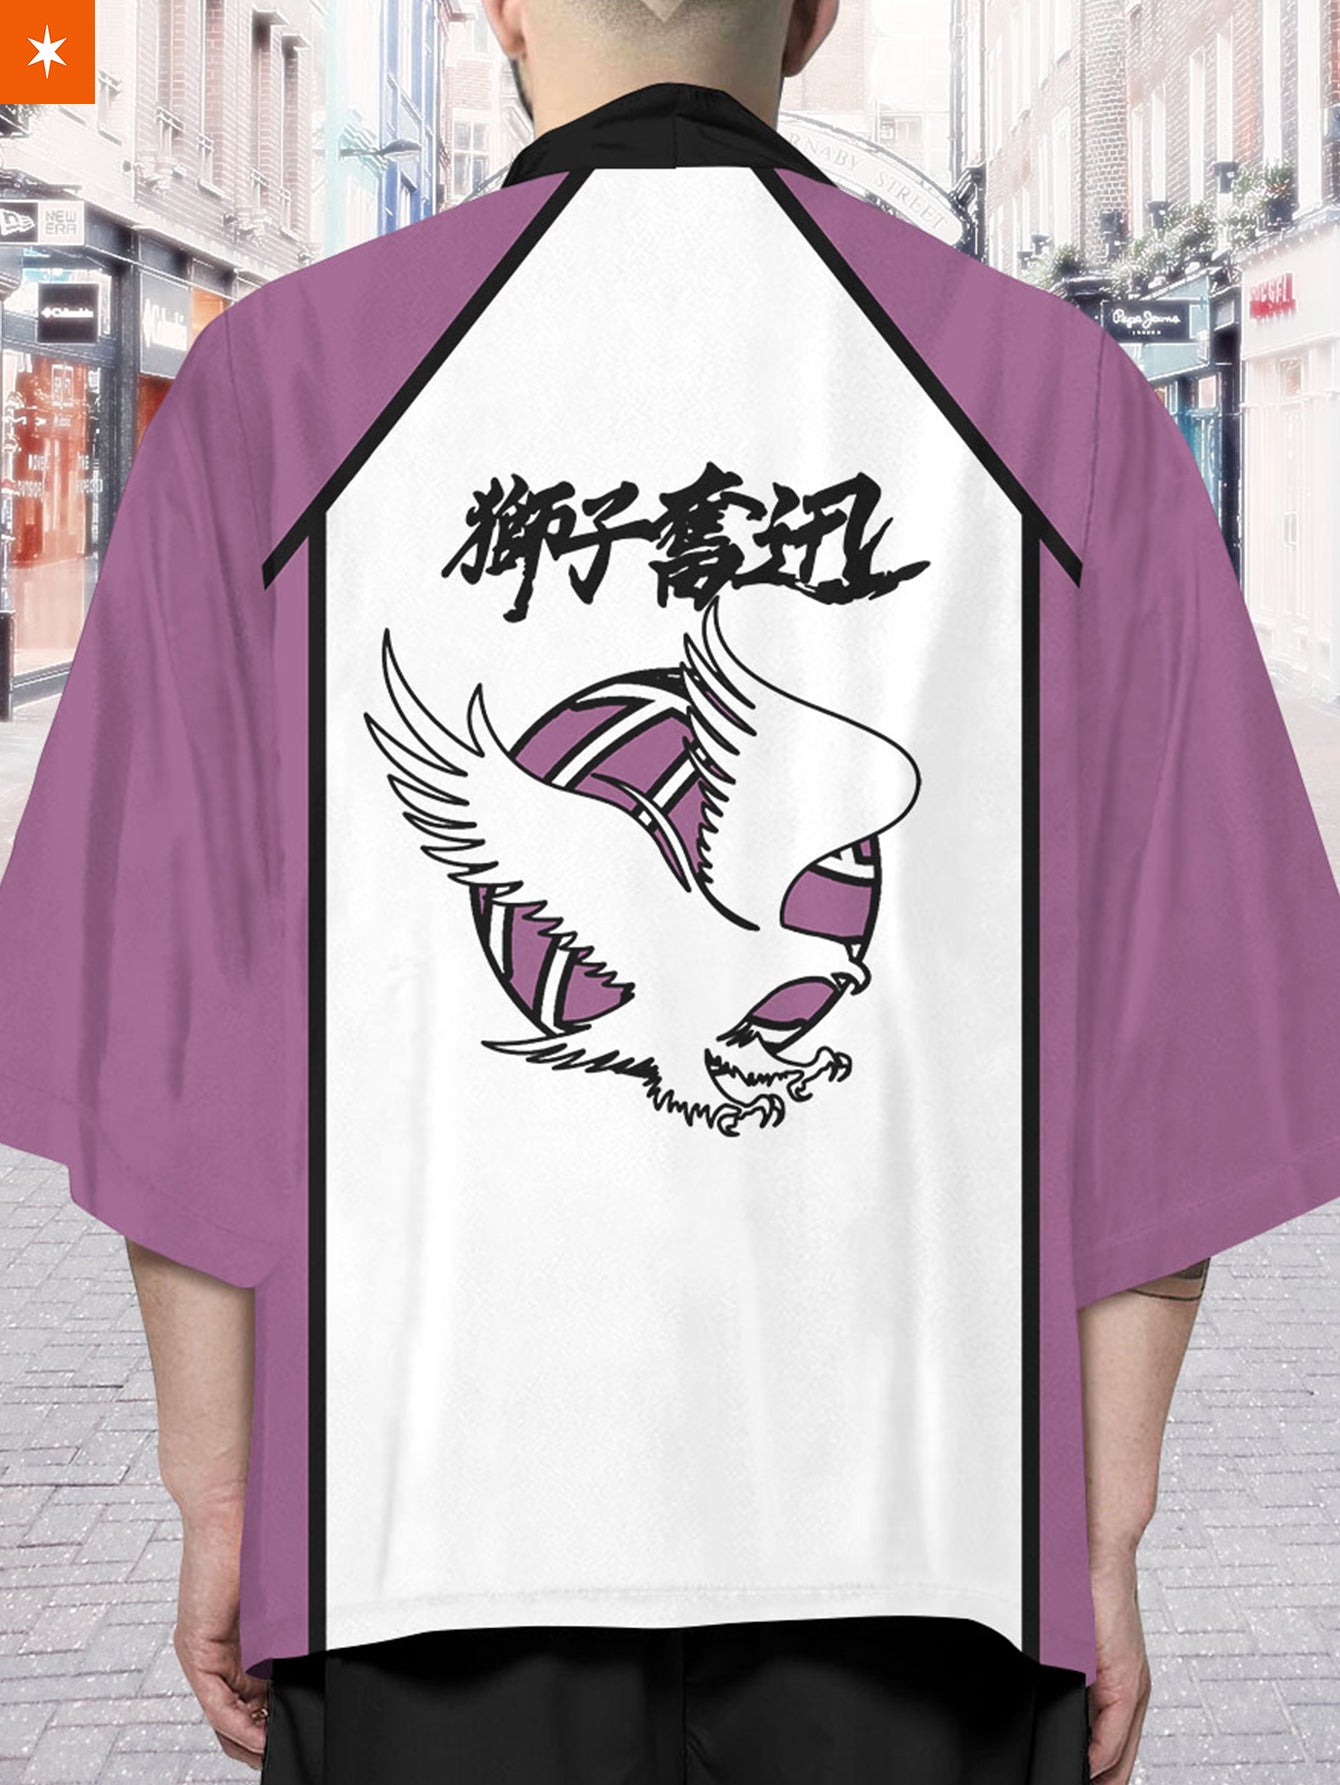 Fandomaniax - Shiratorizawa High Kimono